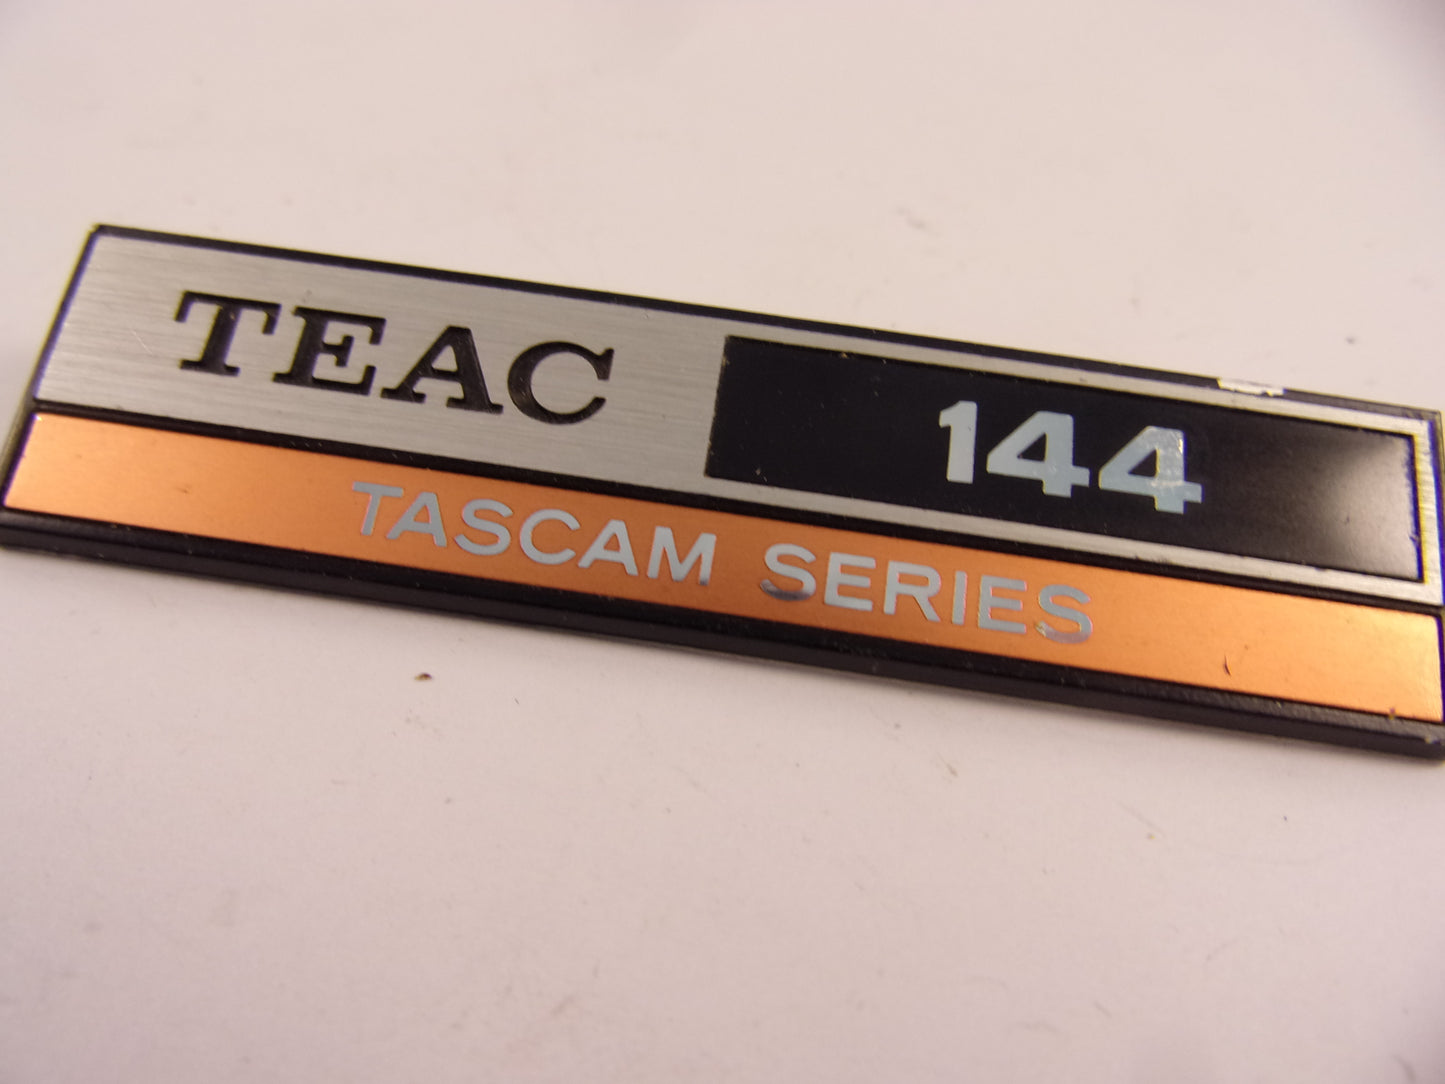 Tascam 144 badge